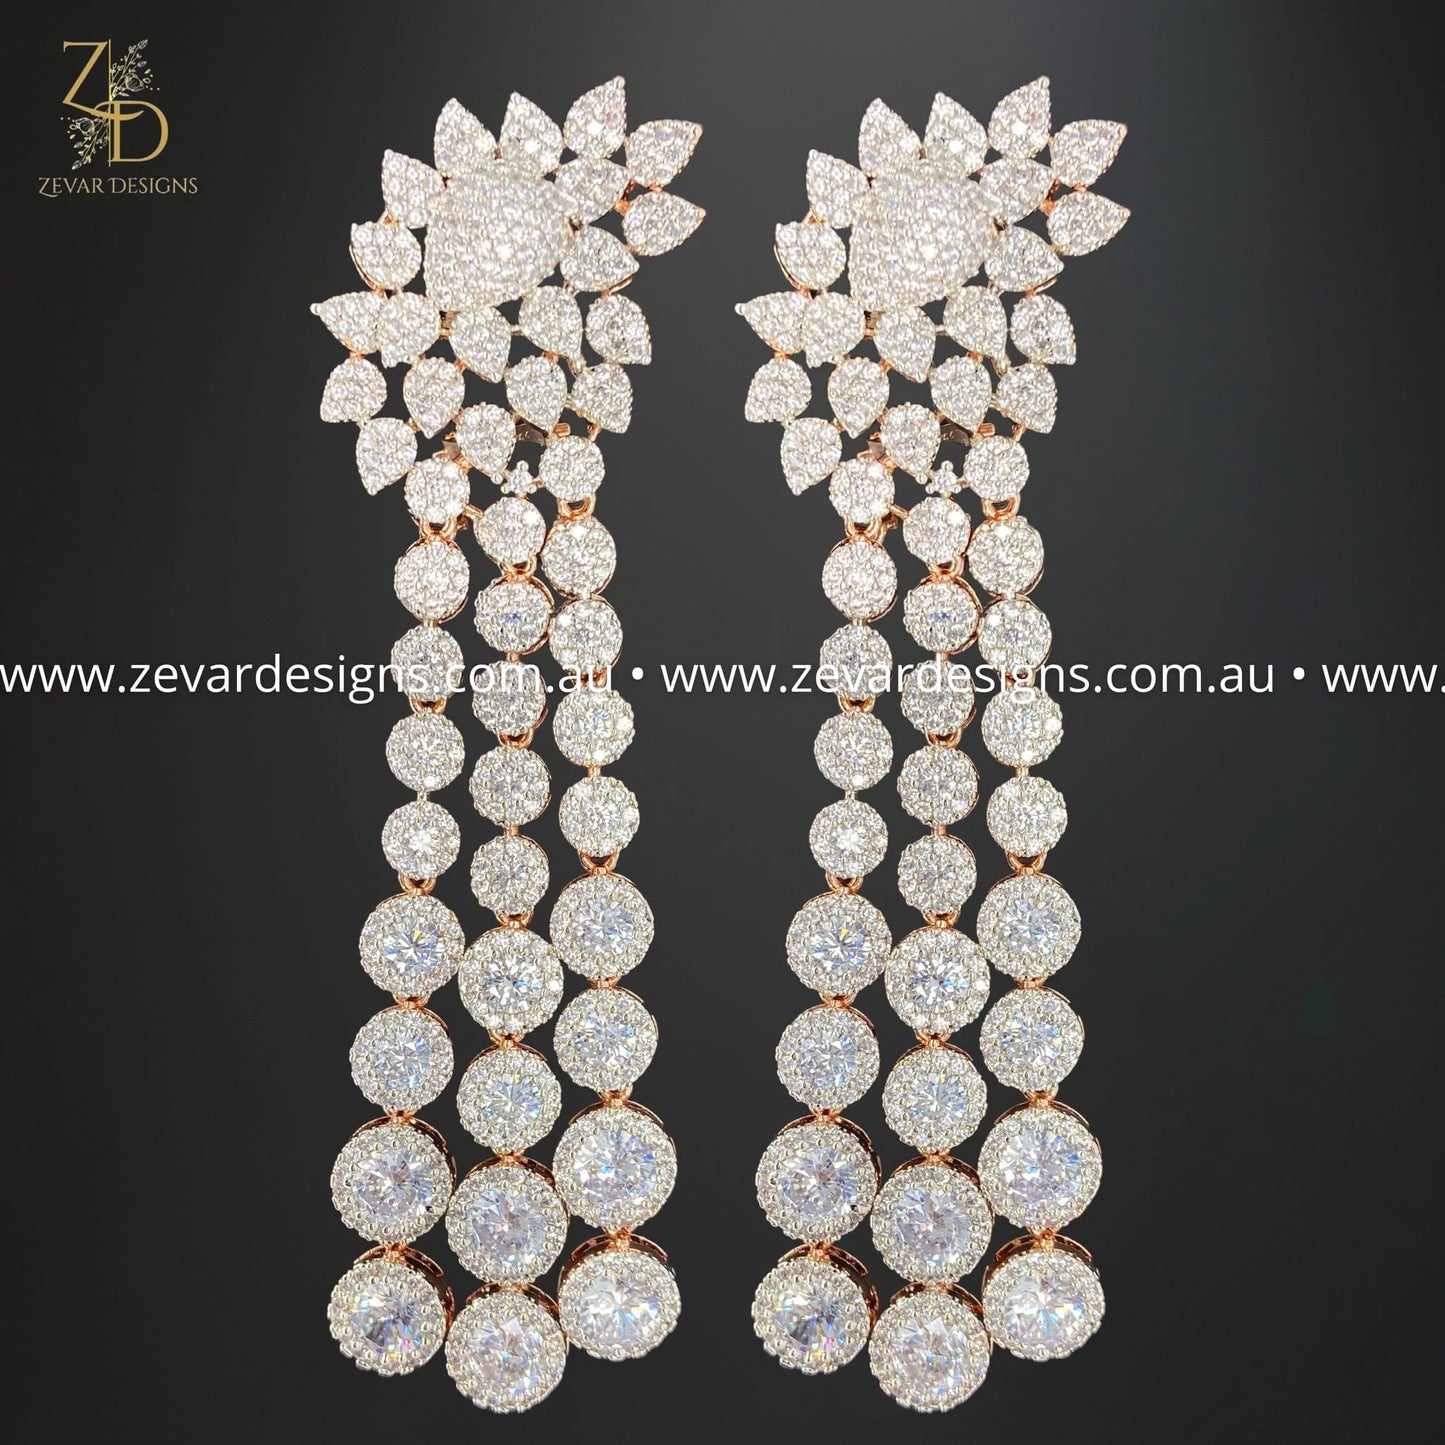 Zevar Designs Indo-Western Earrings AD/Zircon Earrings - Rose Gold